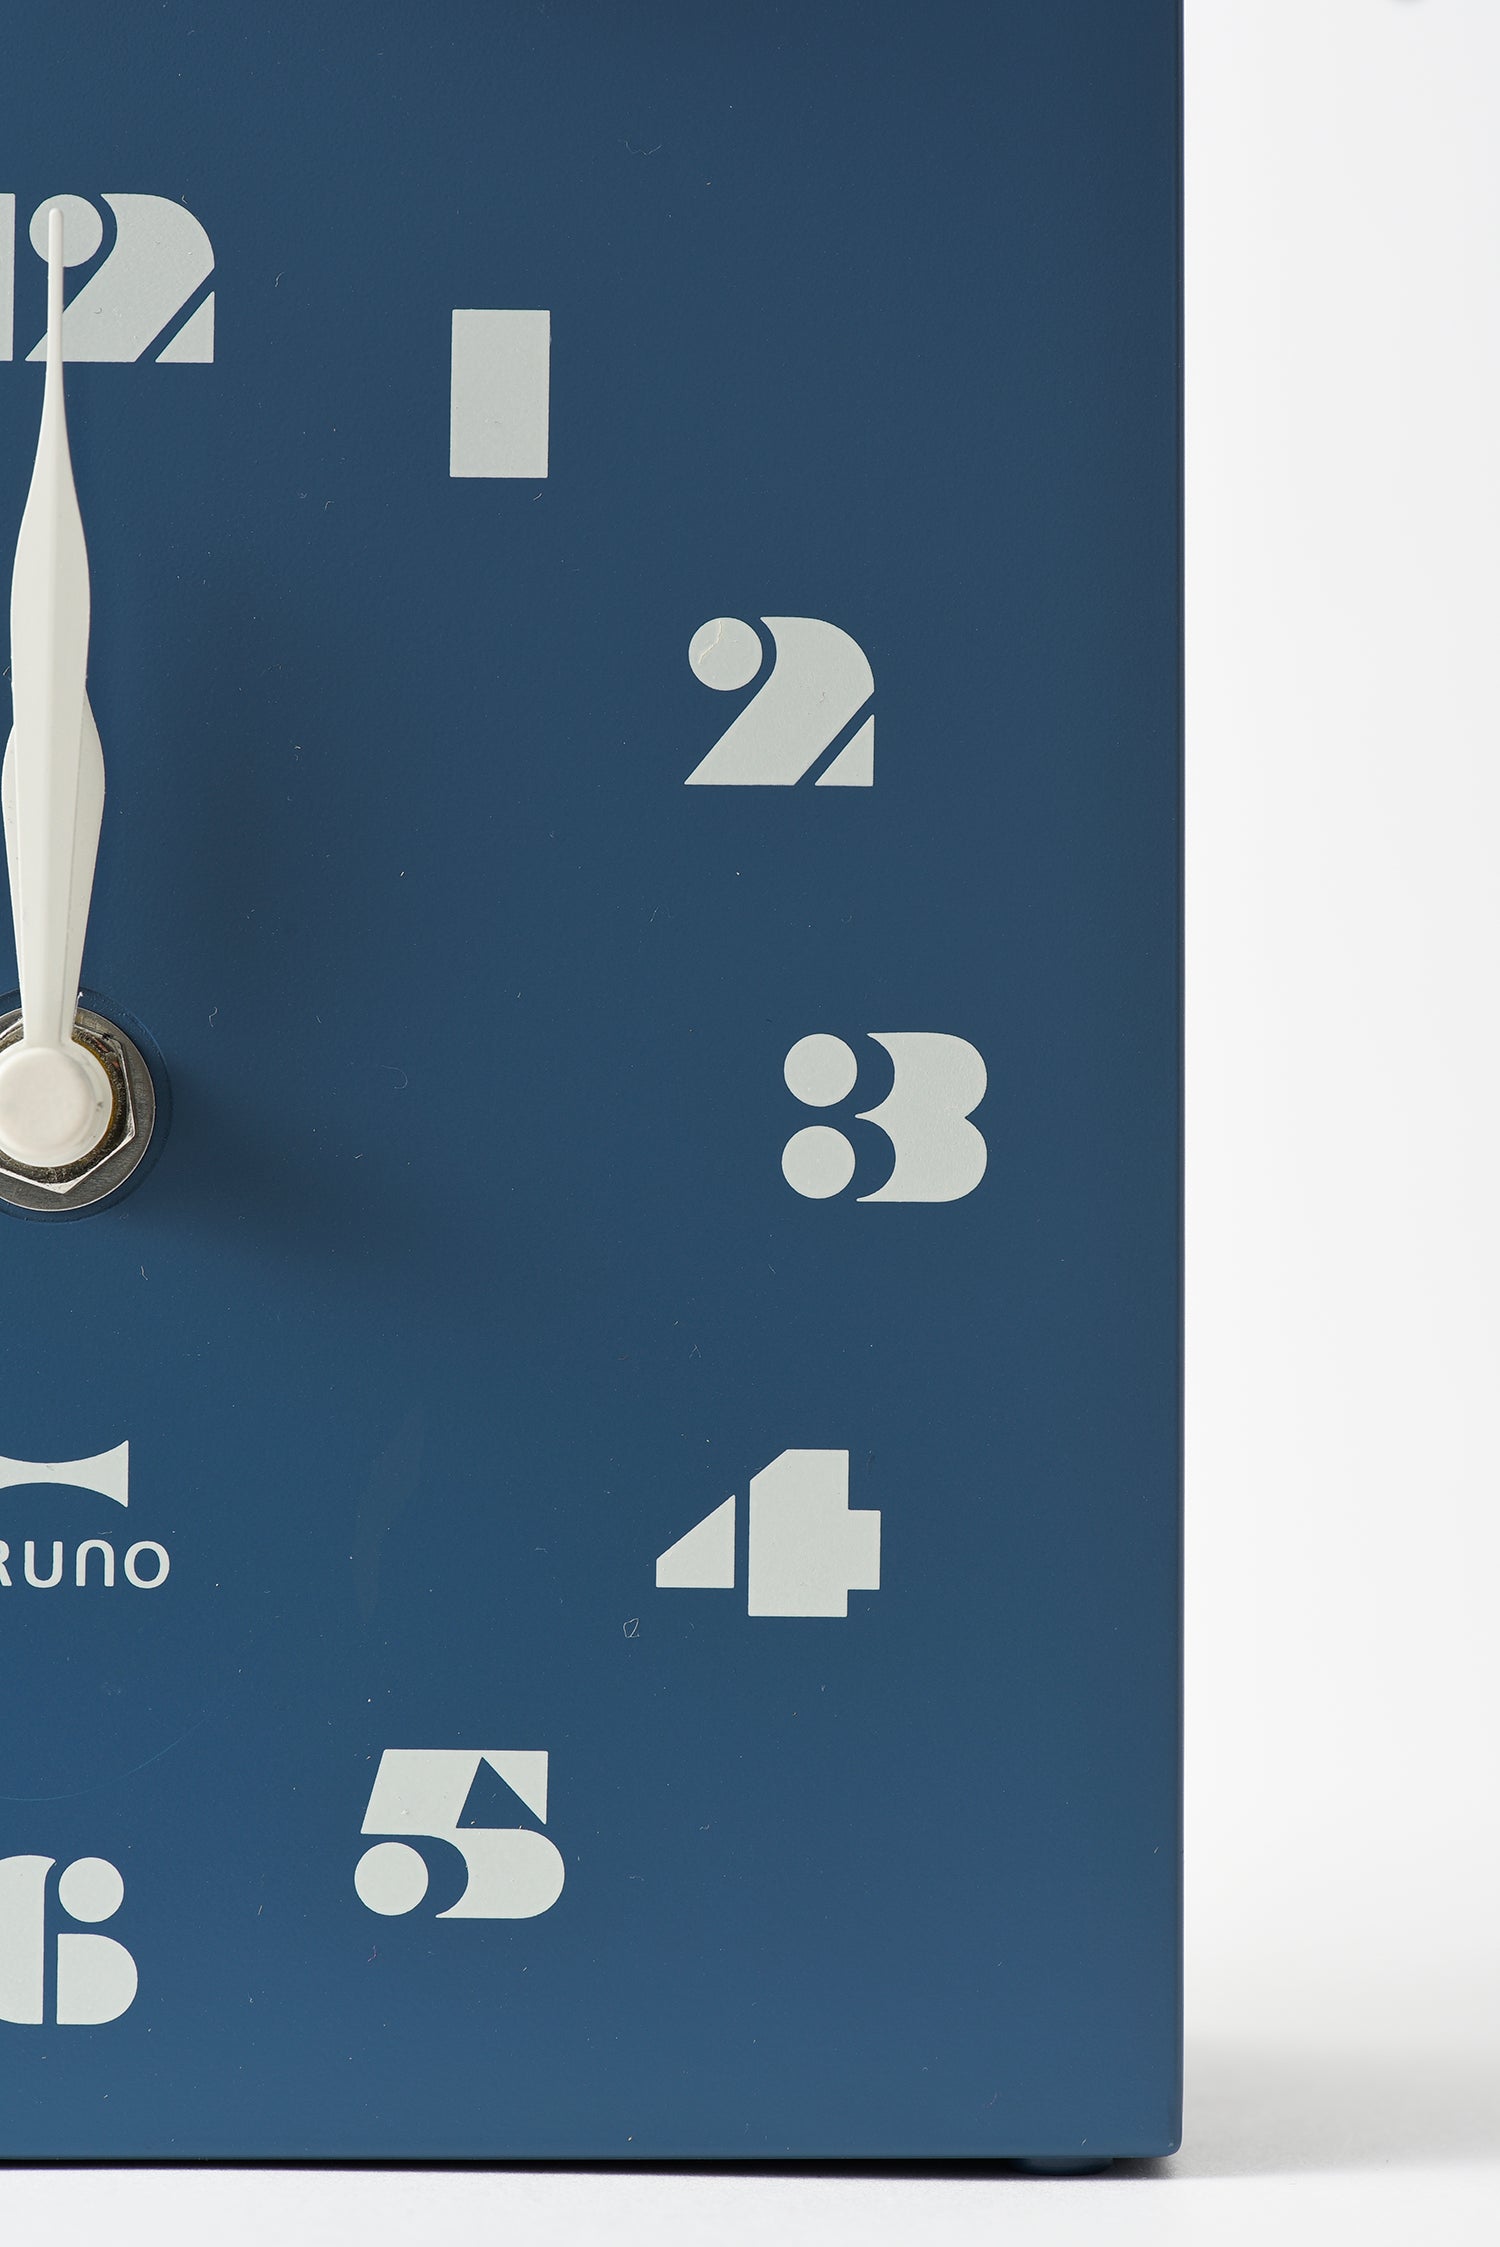 BRUNO Bird House Clock - Mint Green BCW047-MTGR